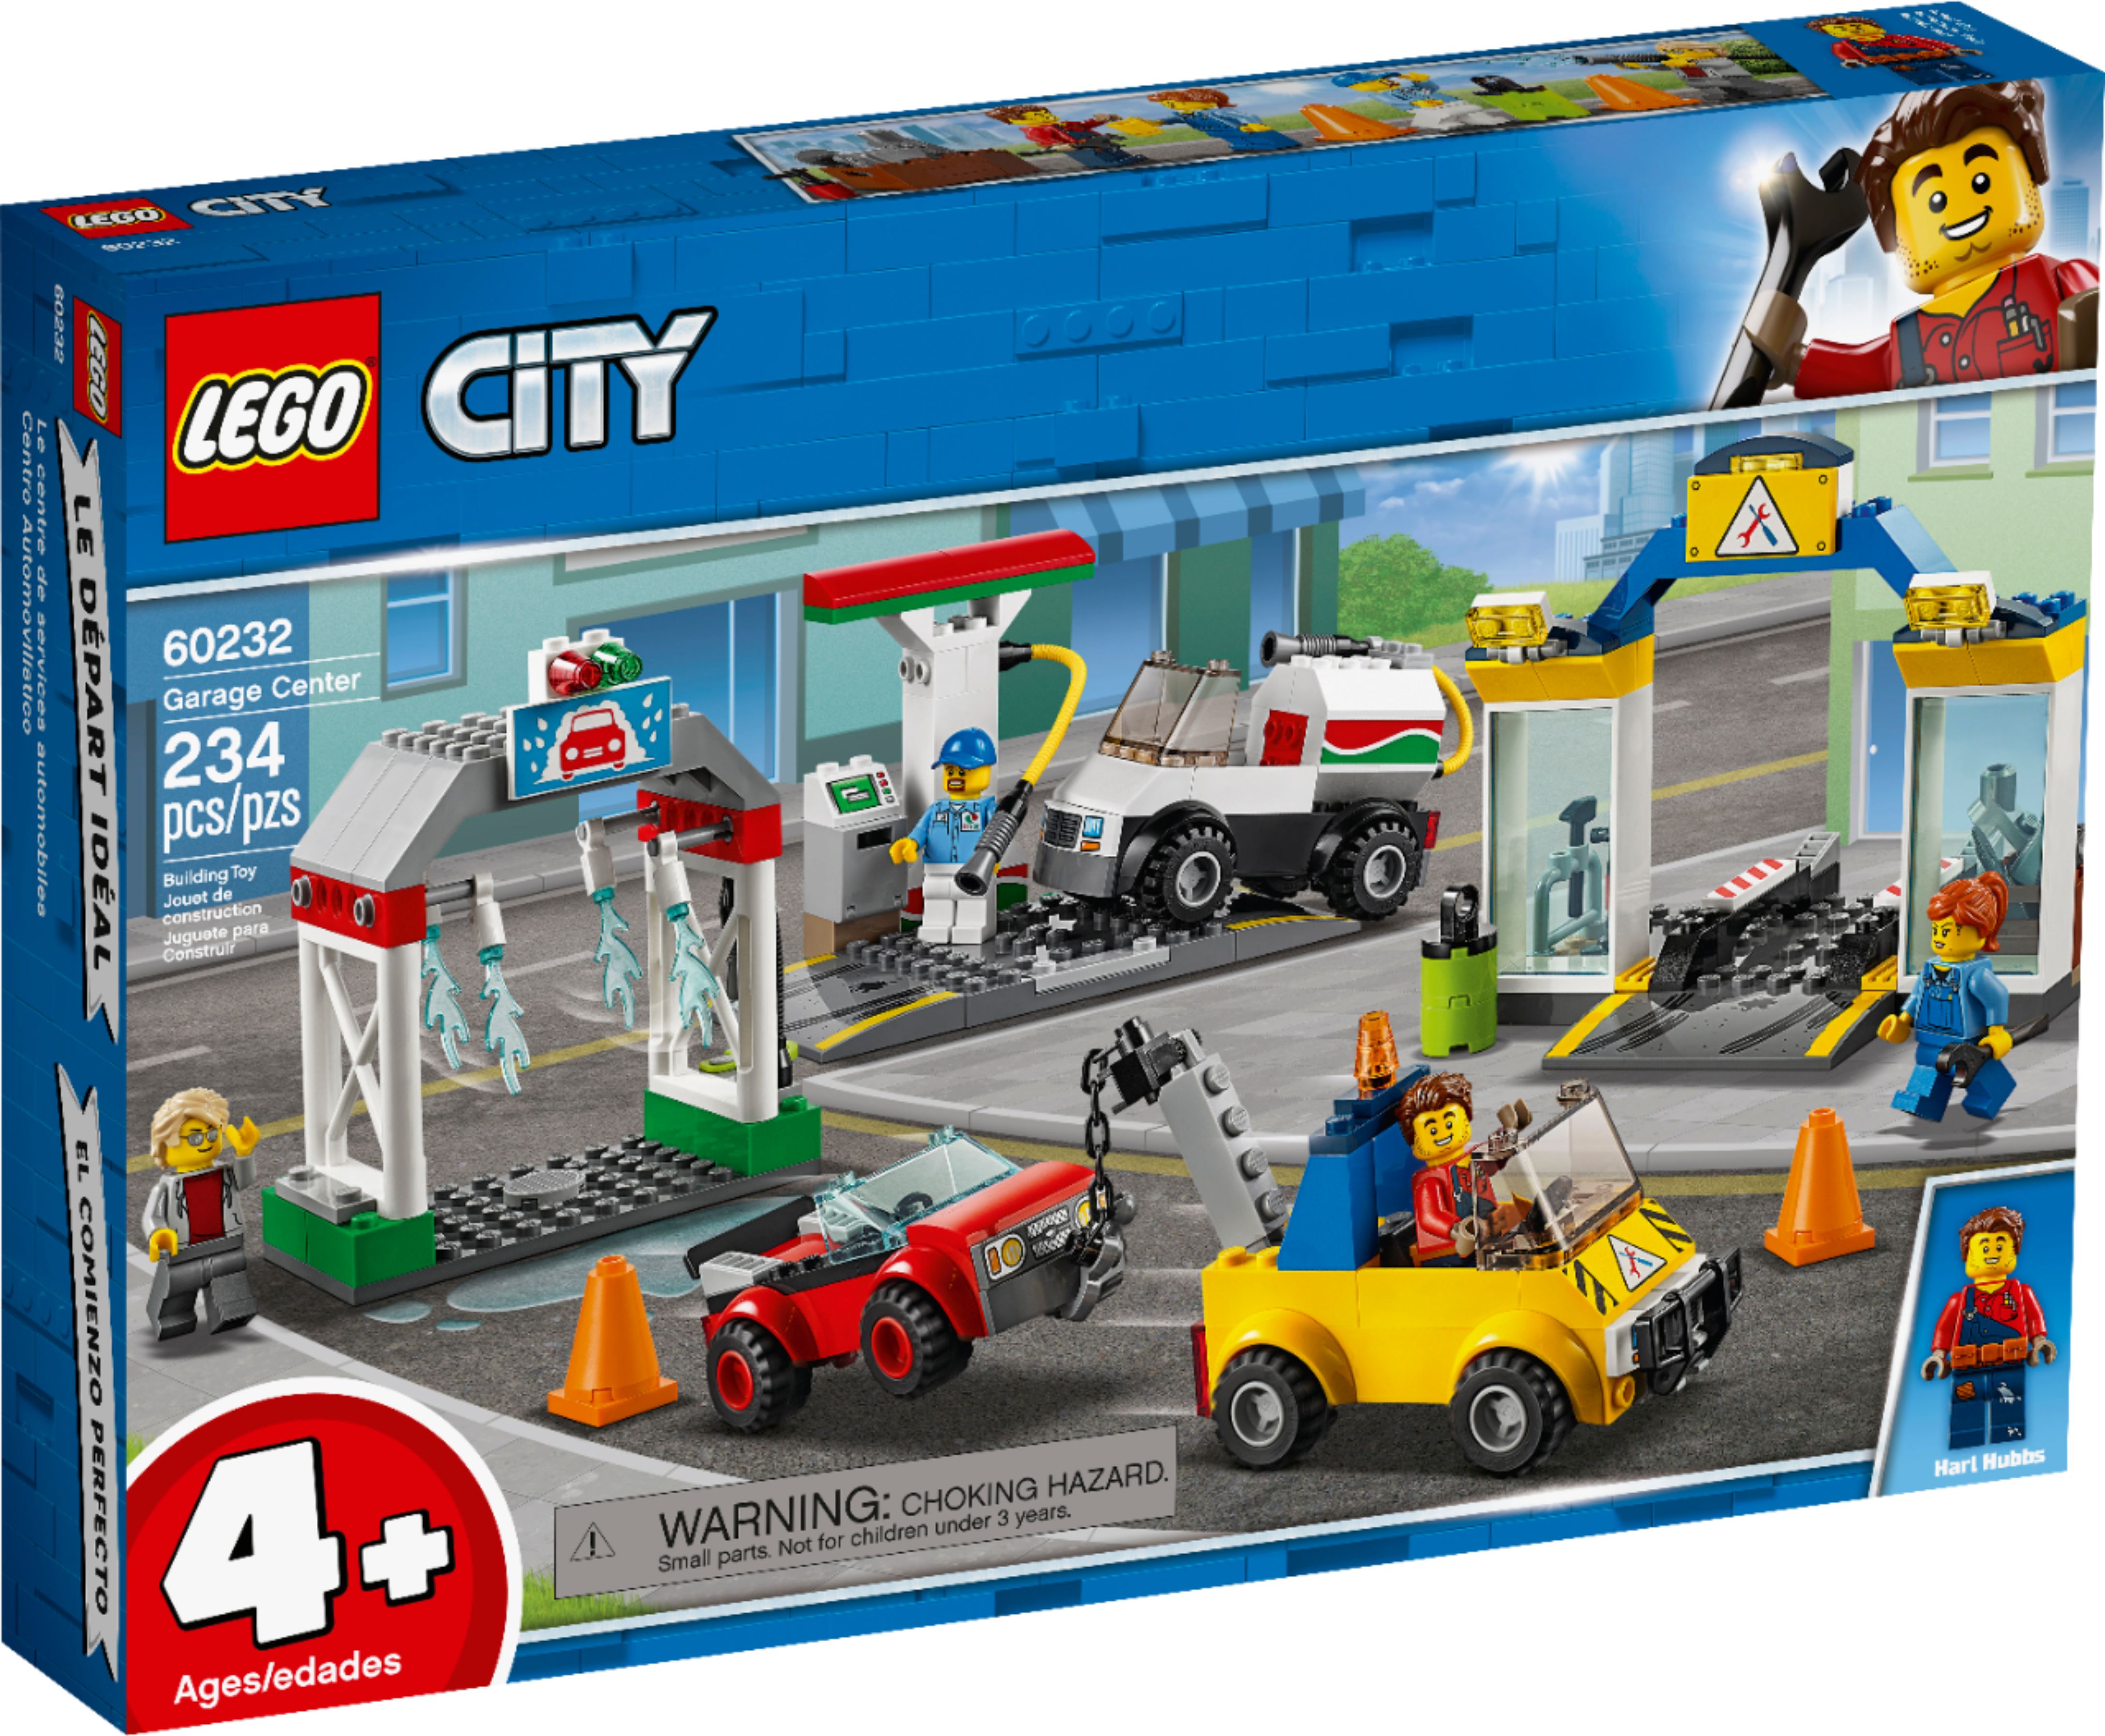 Angle View: LEGO - City Garage Center 60232